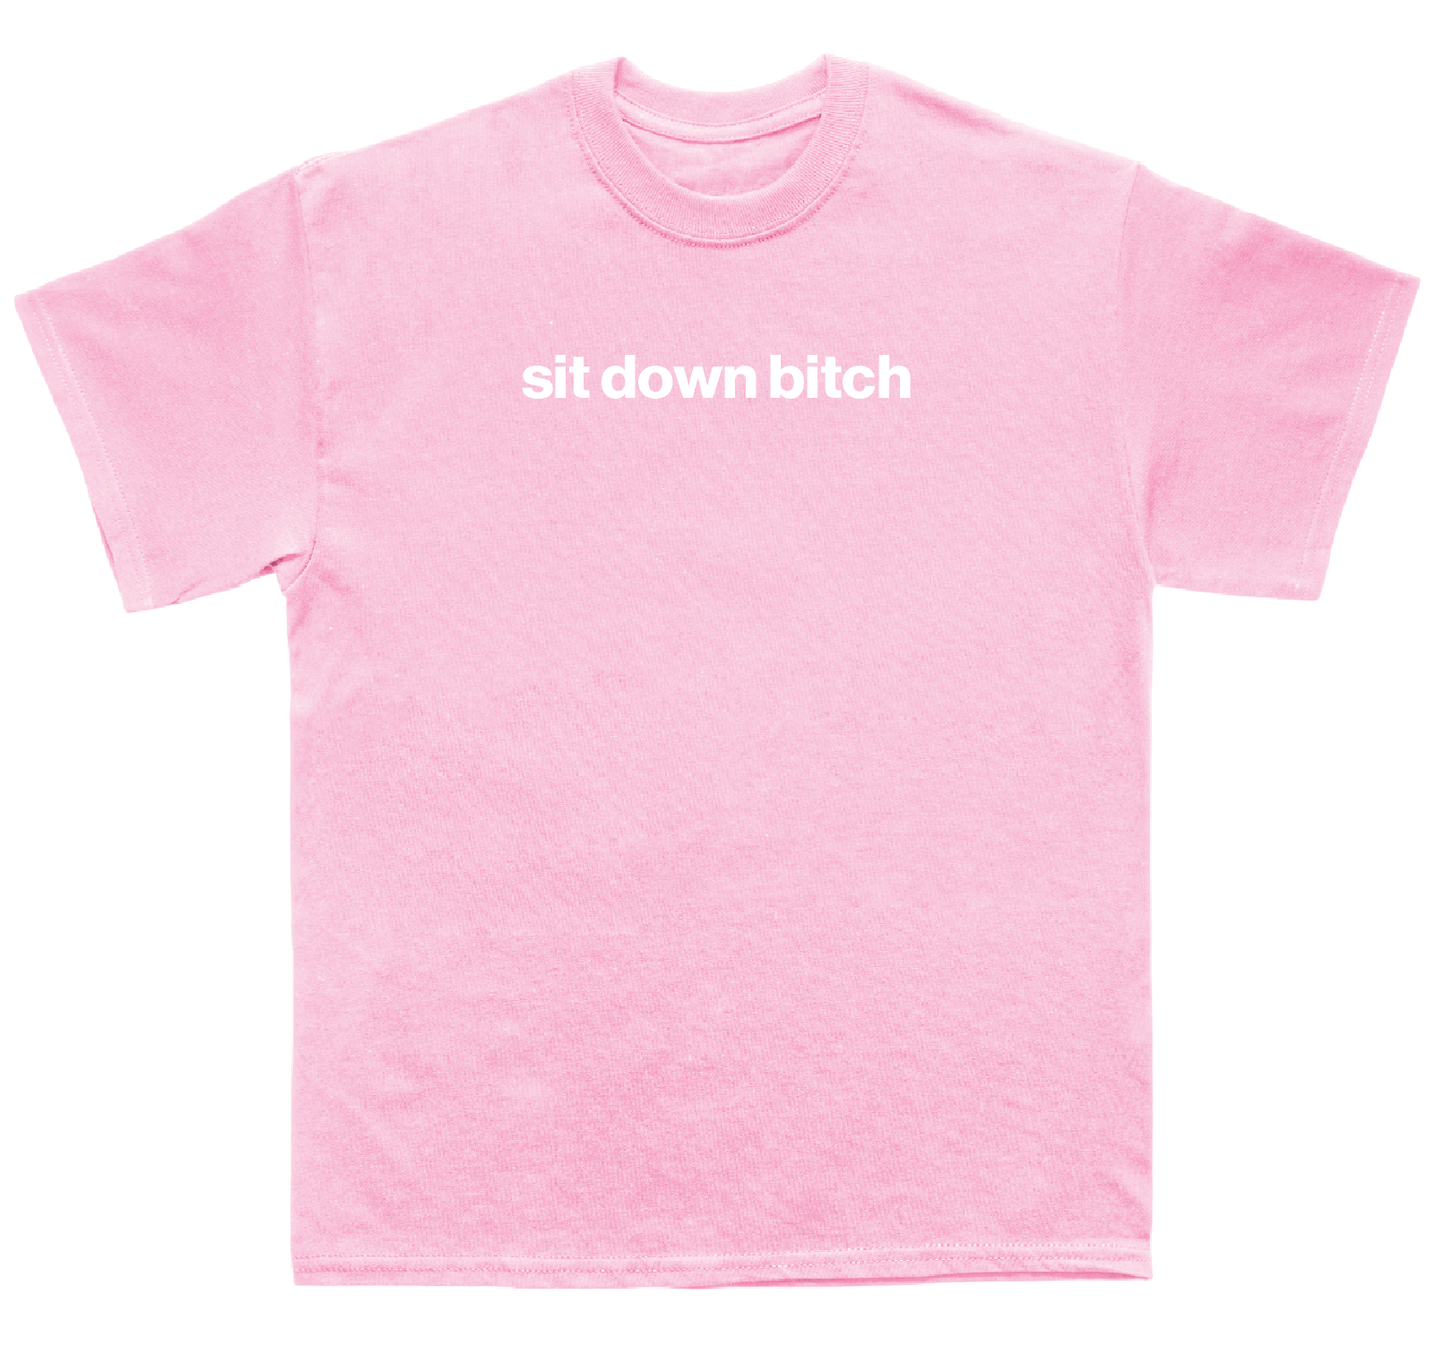 sit down bitch shirt